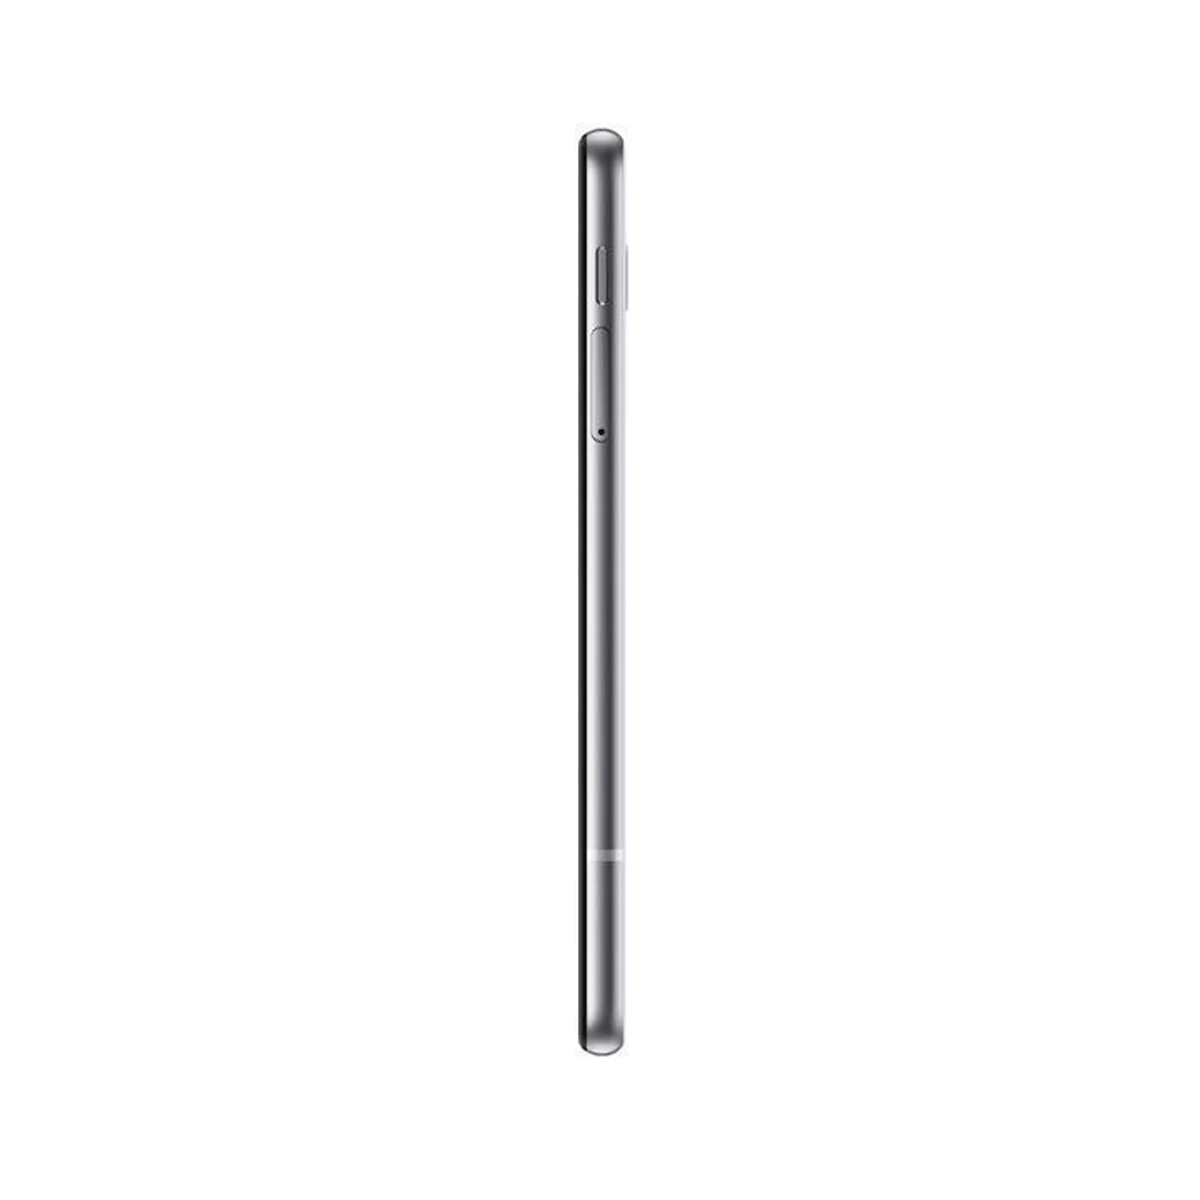 LG G8s Thinq G810 128gb 4g 6gb Ram Tela 6.21' - Mostruário